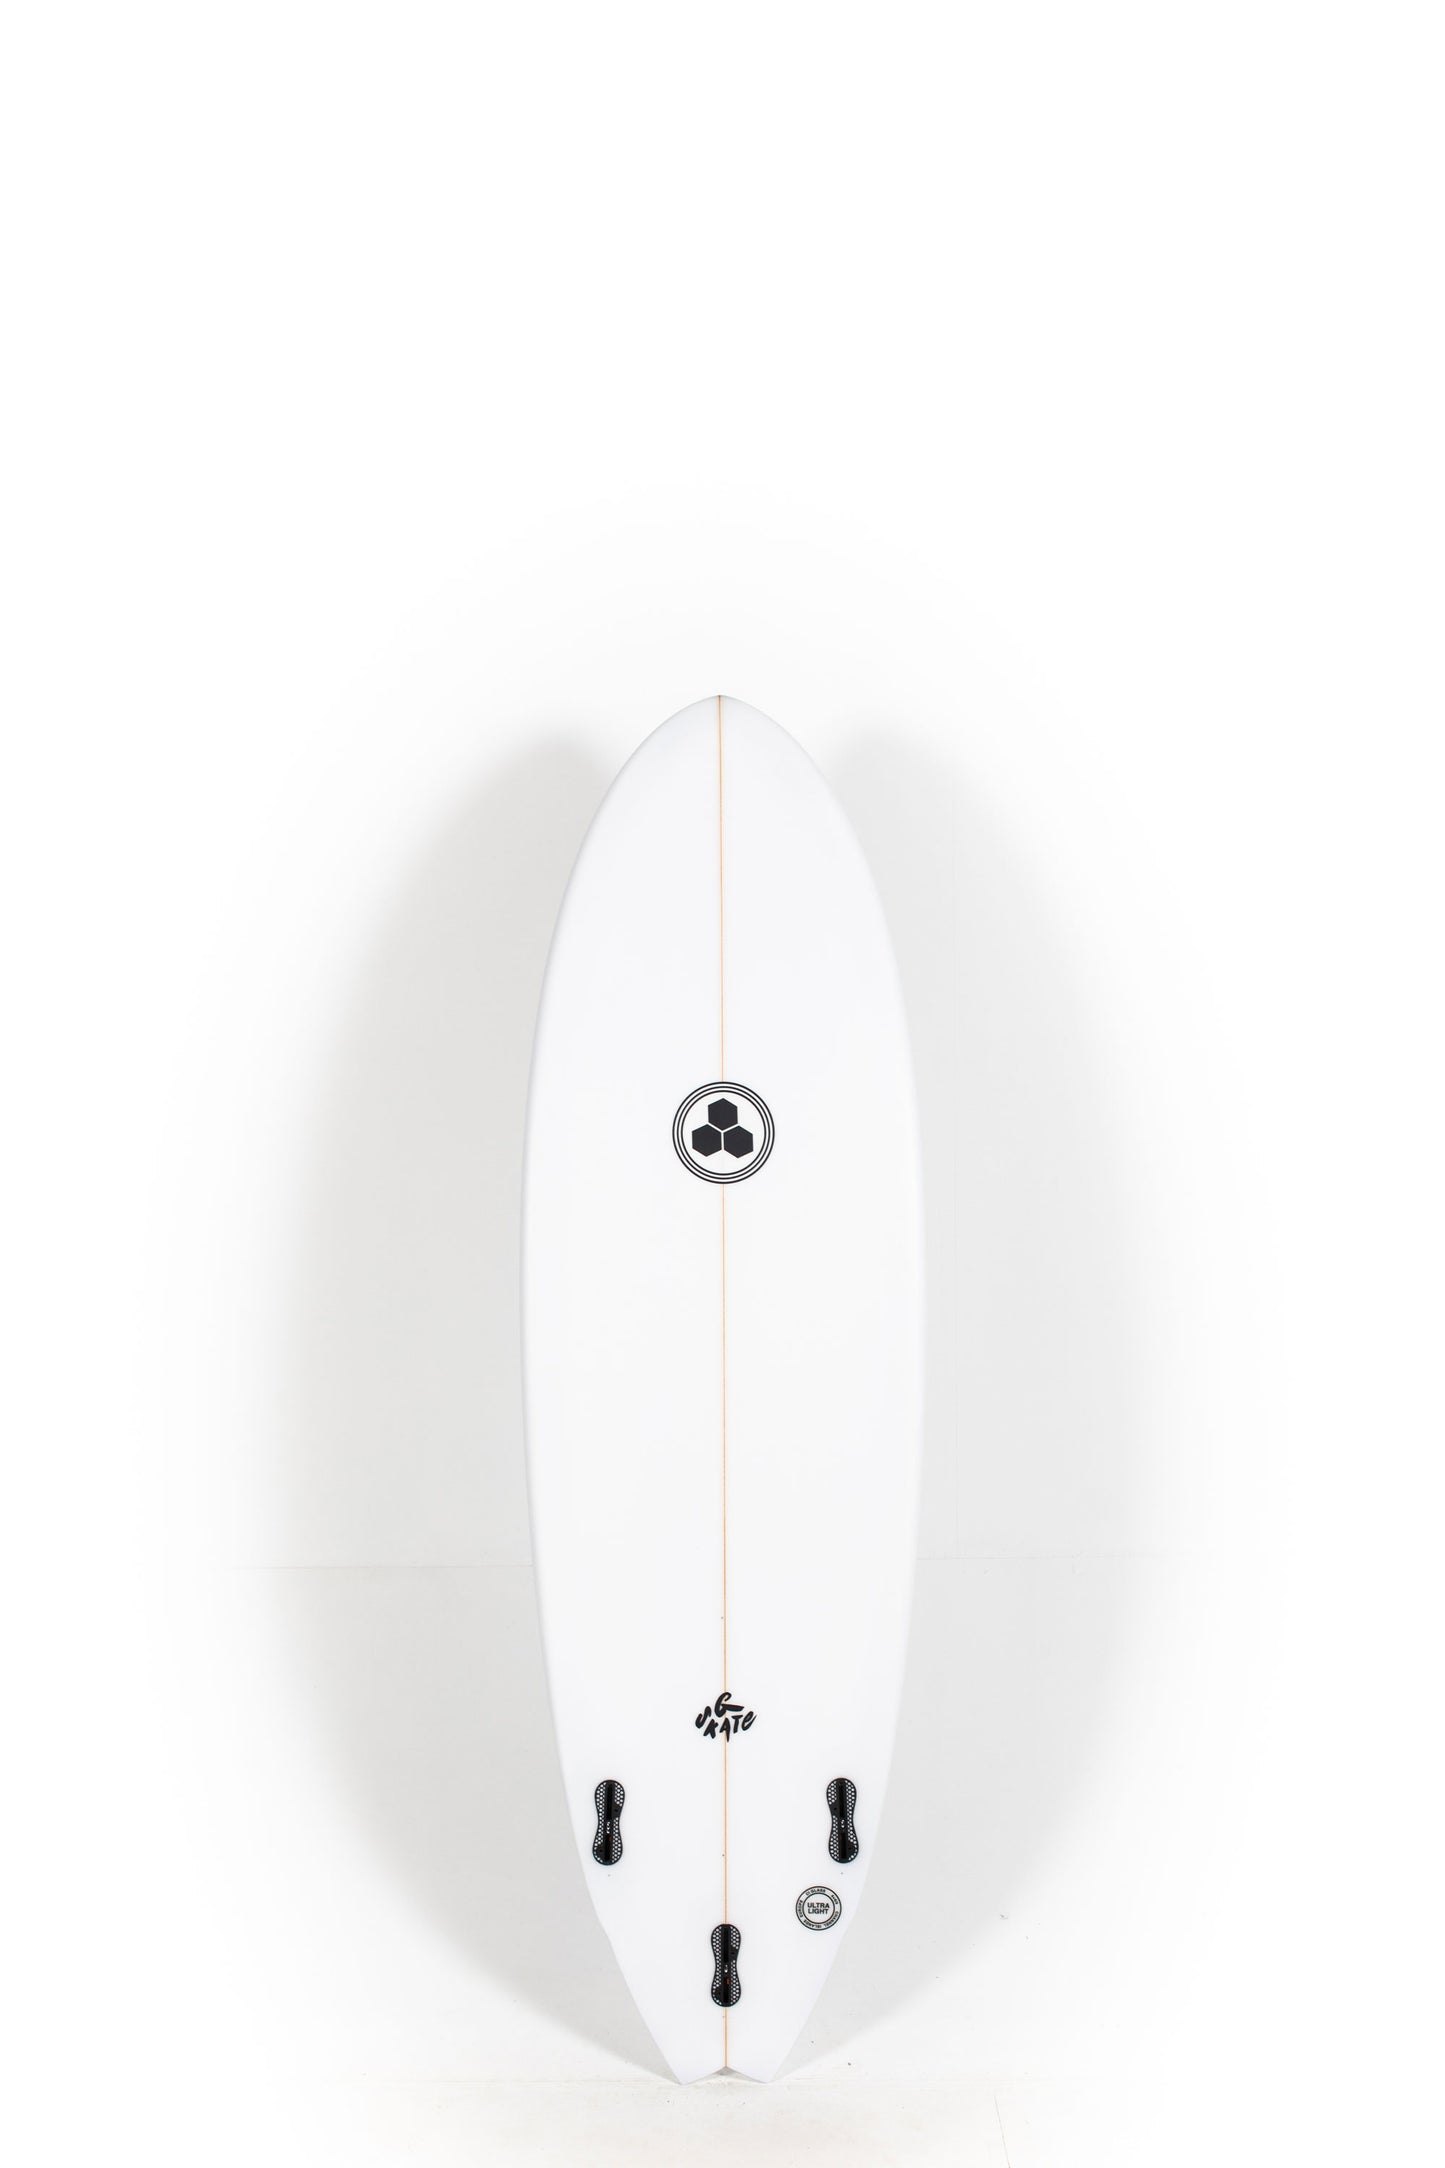 Pukas Surf Shop - Channel Islands - G-Skate by Al Merrick - 5'10" x 20 x 2 5/8 - 34.5L - CI26679